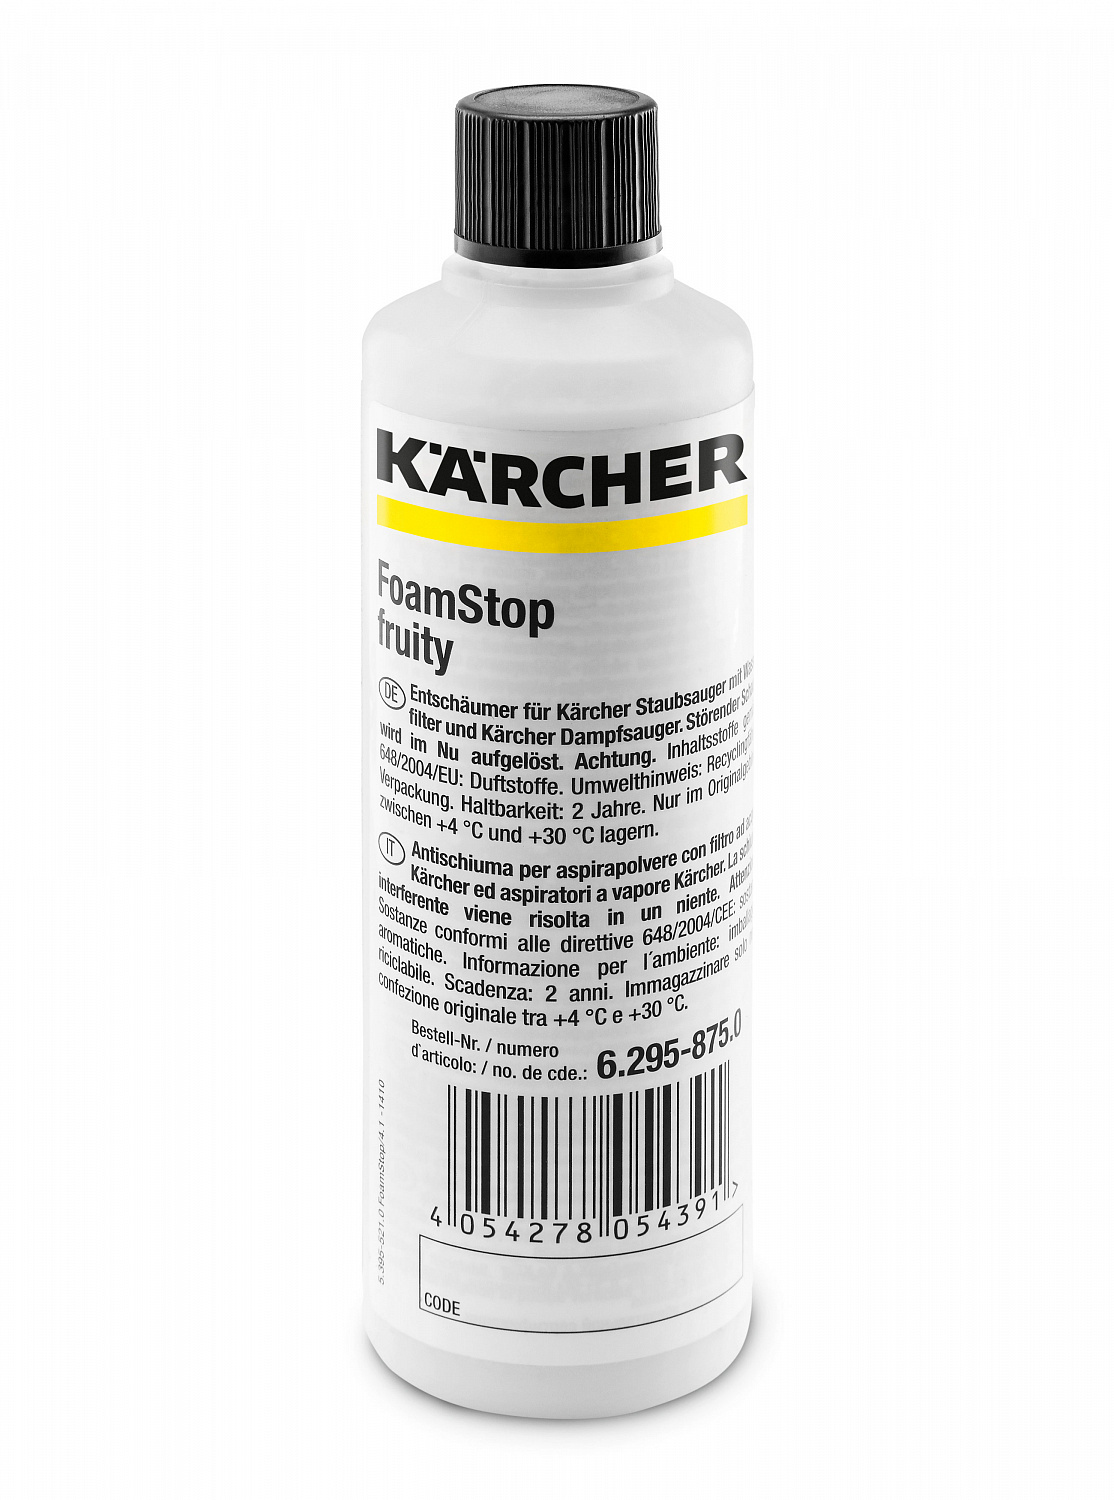 Пеногаситель Karcher RM FoamStop fruity (125мл) (6.295-875.0) 